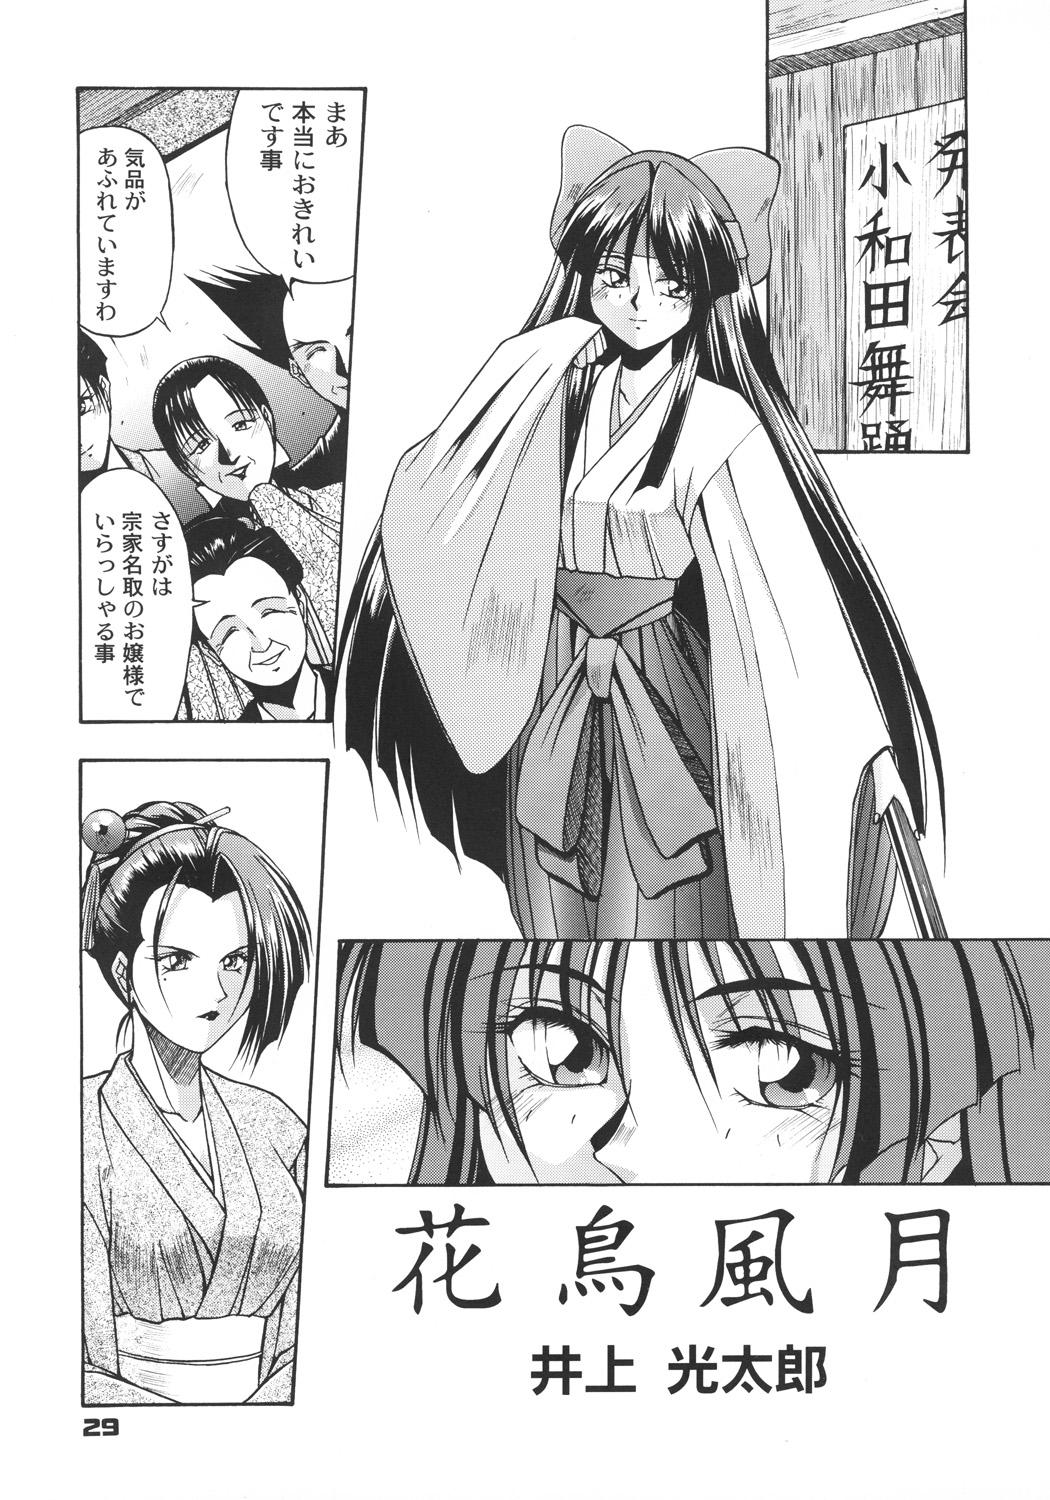 Inoue Koutarou Kojin Sakuhin Shuu 95→99 Special Edition 27